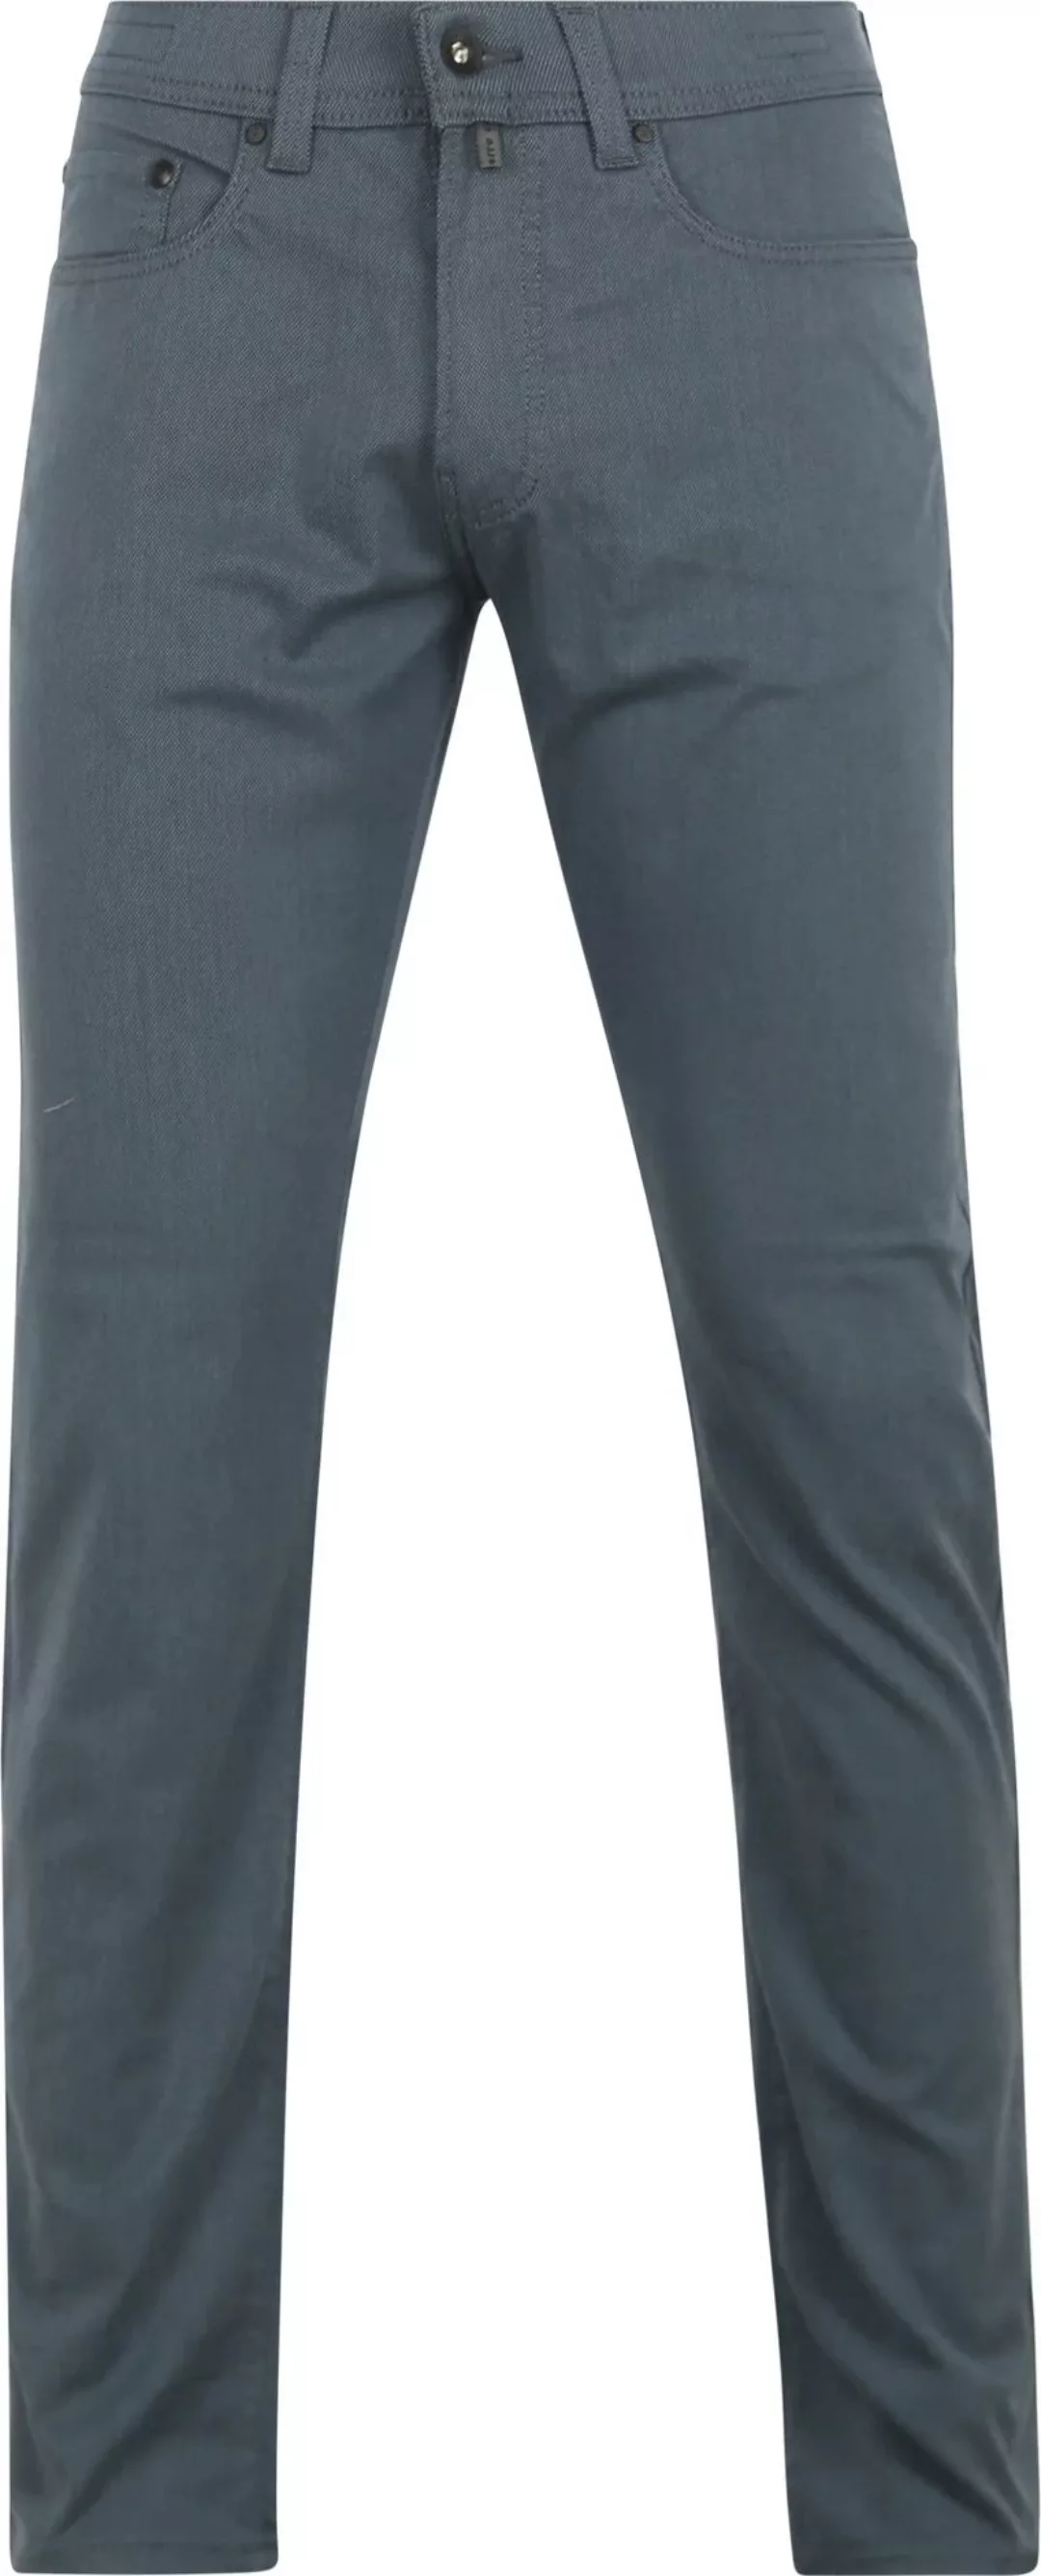 Pierre Cardin Trousers Lyon Tapered Ocean Blau - Größe W 34 - L 34 günstig online kaufen